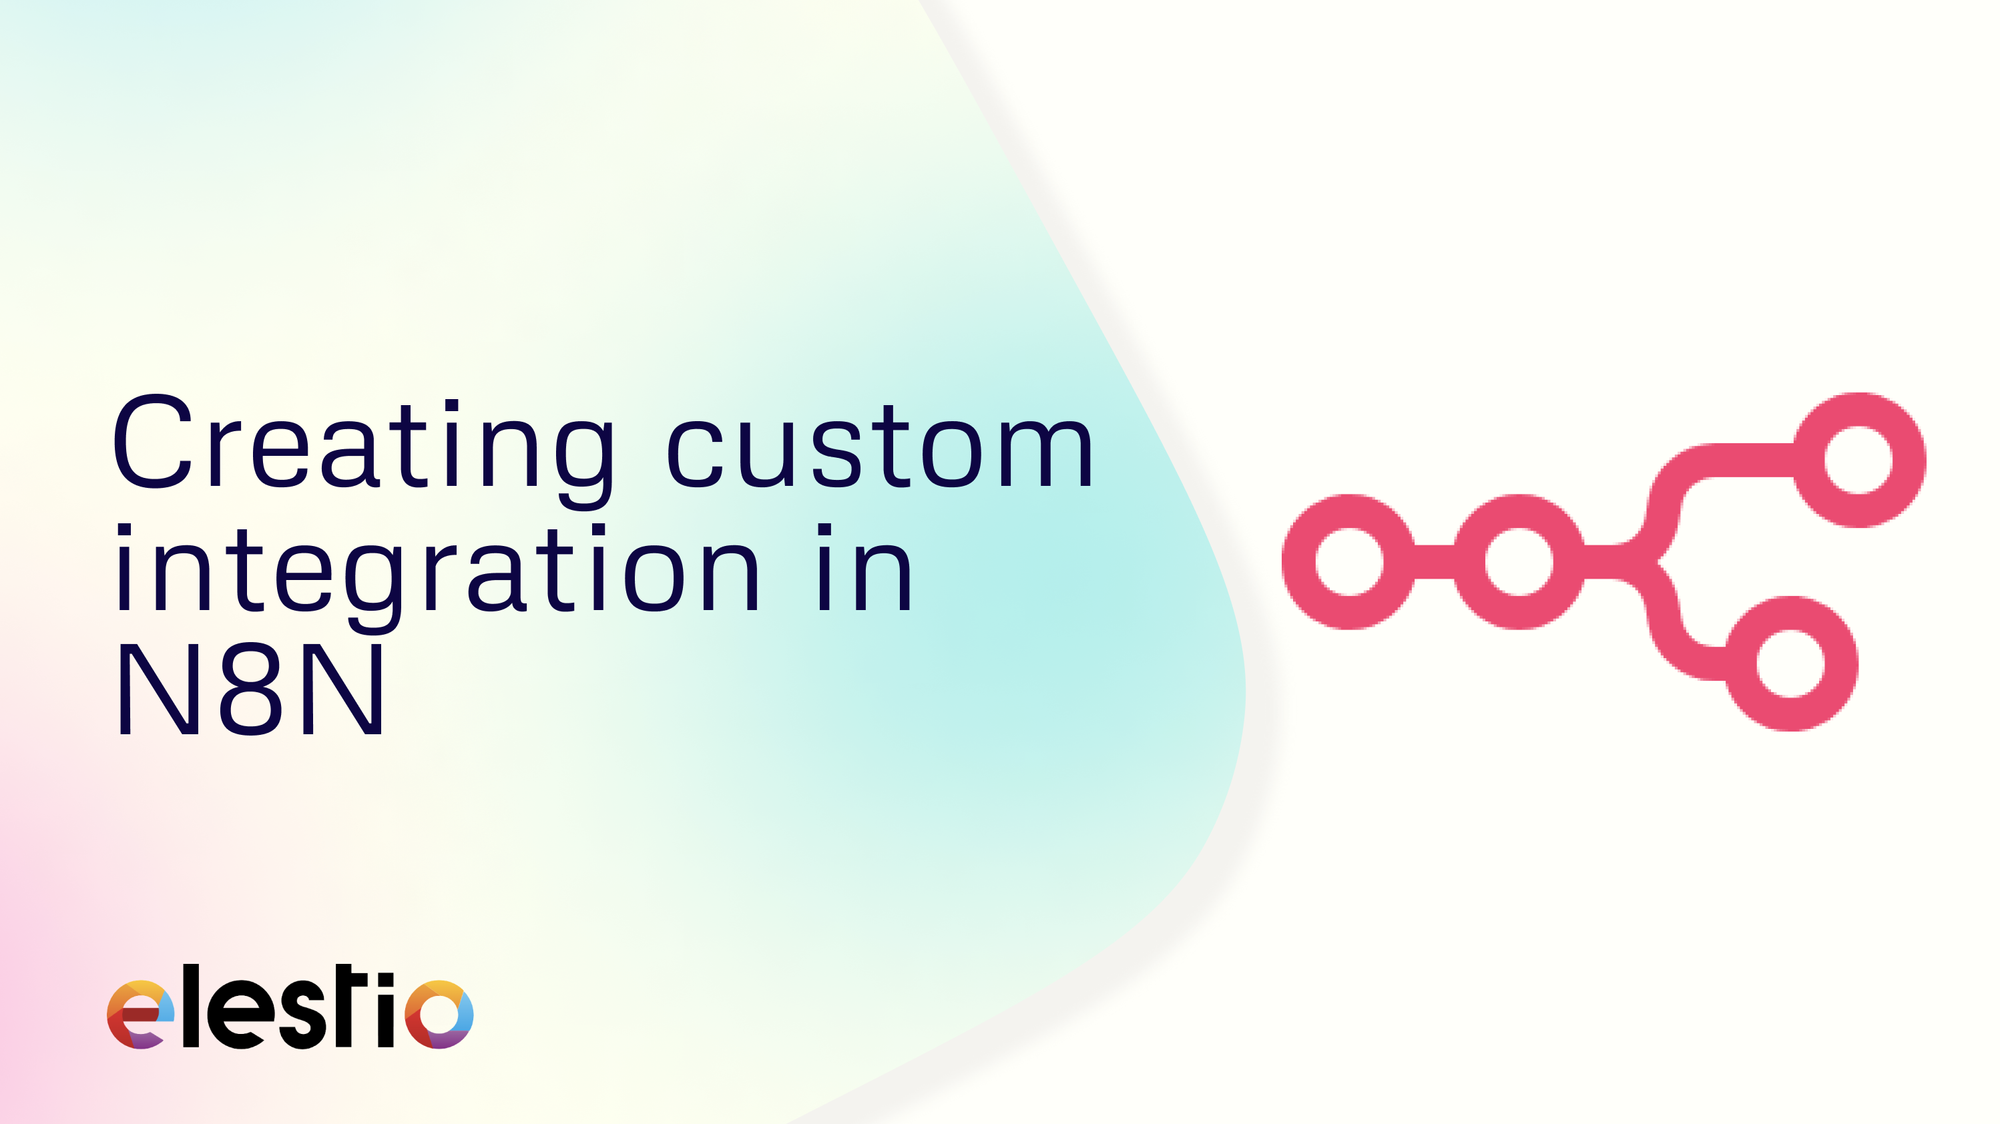 Creating custom integration in N8N